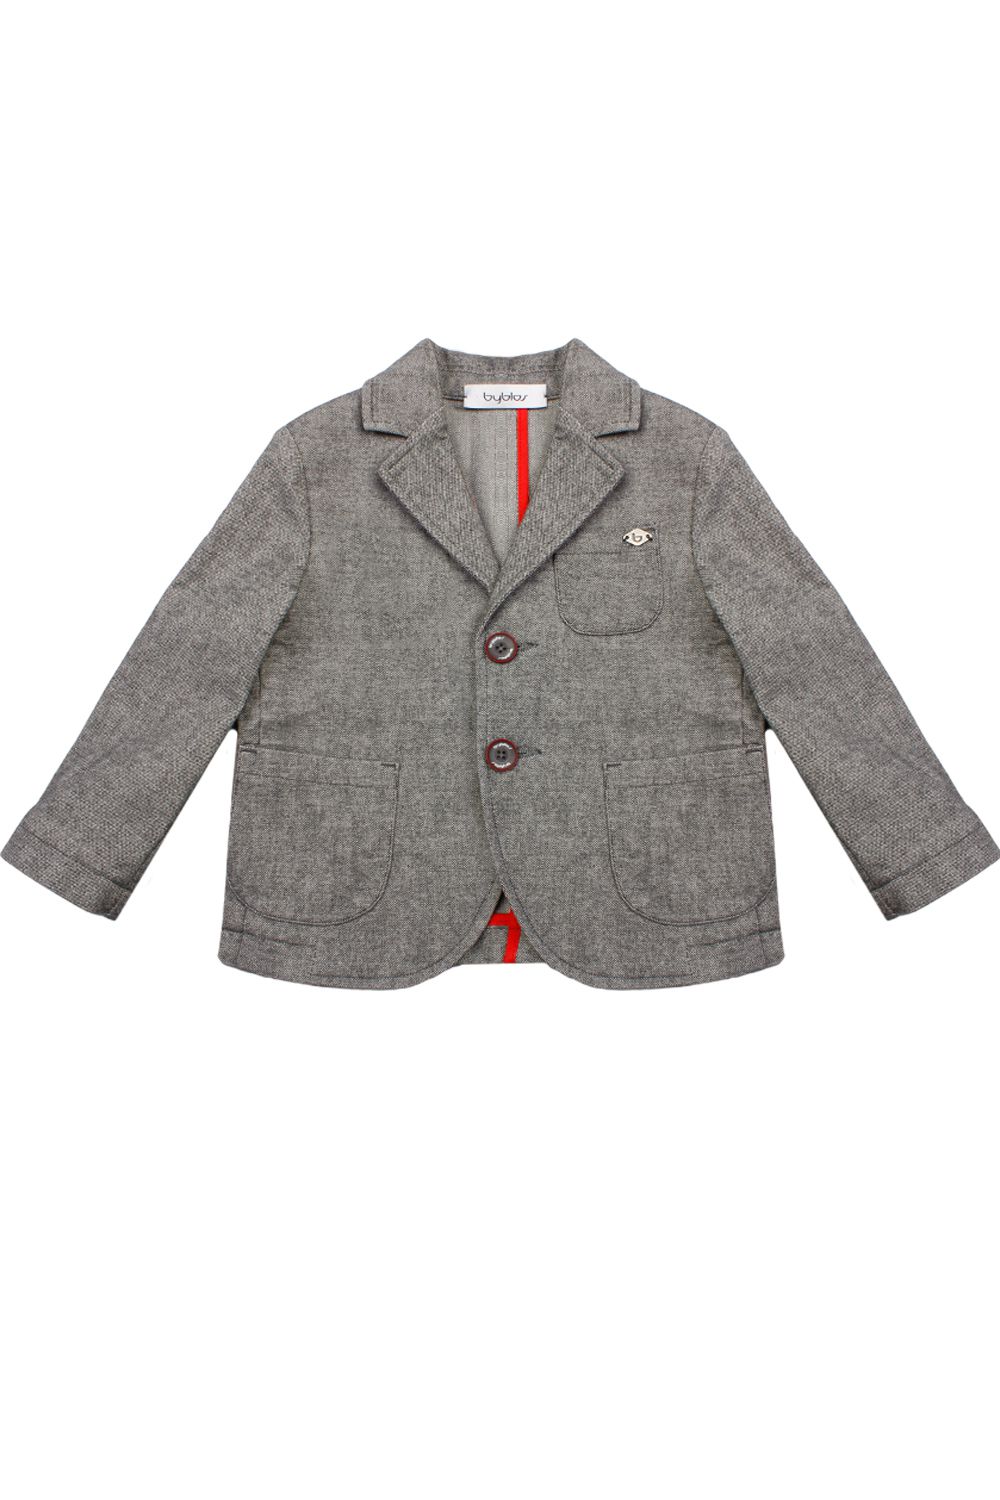 Пиджак Byblos, размер 80, цвет серый